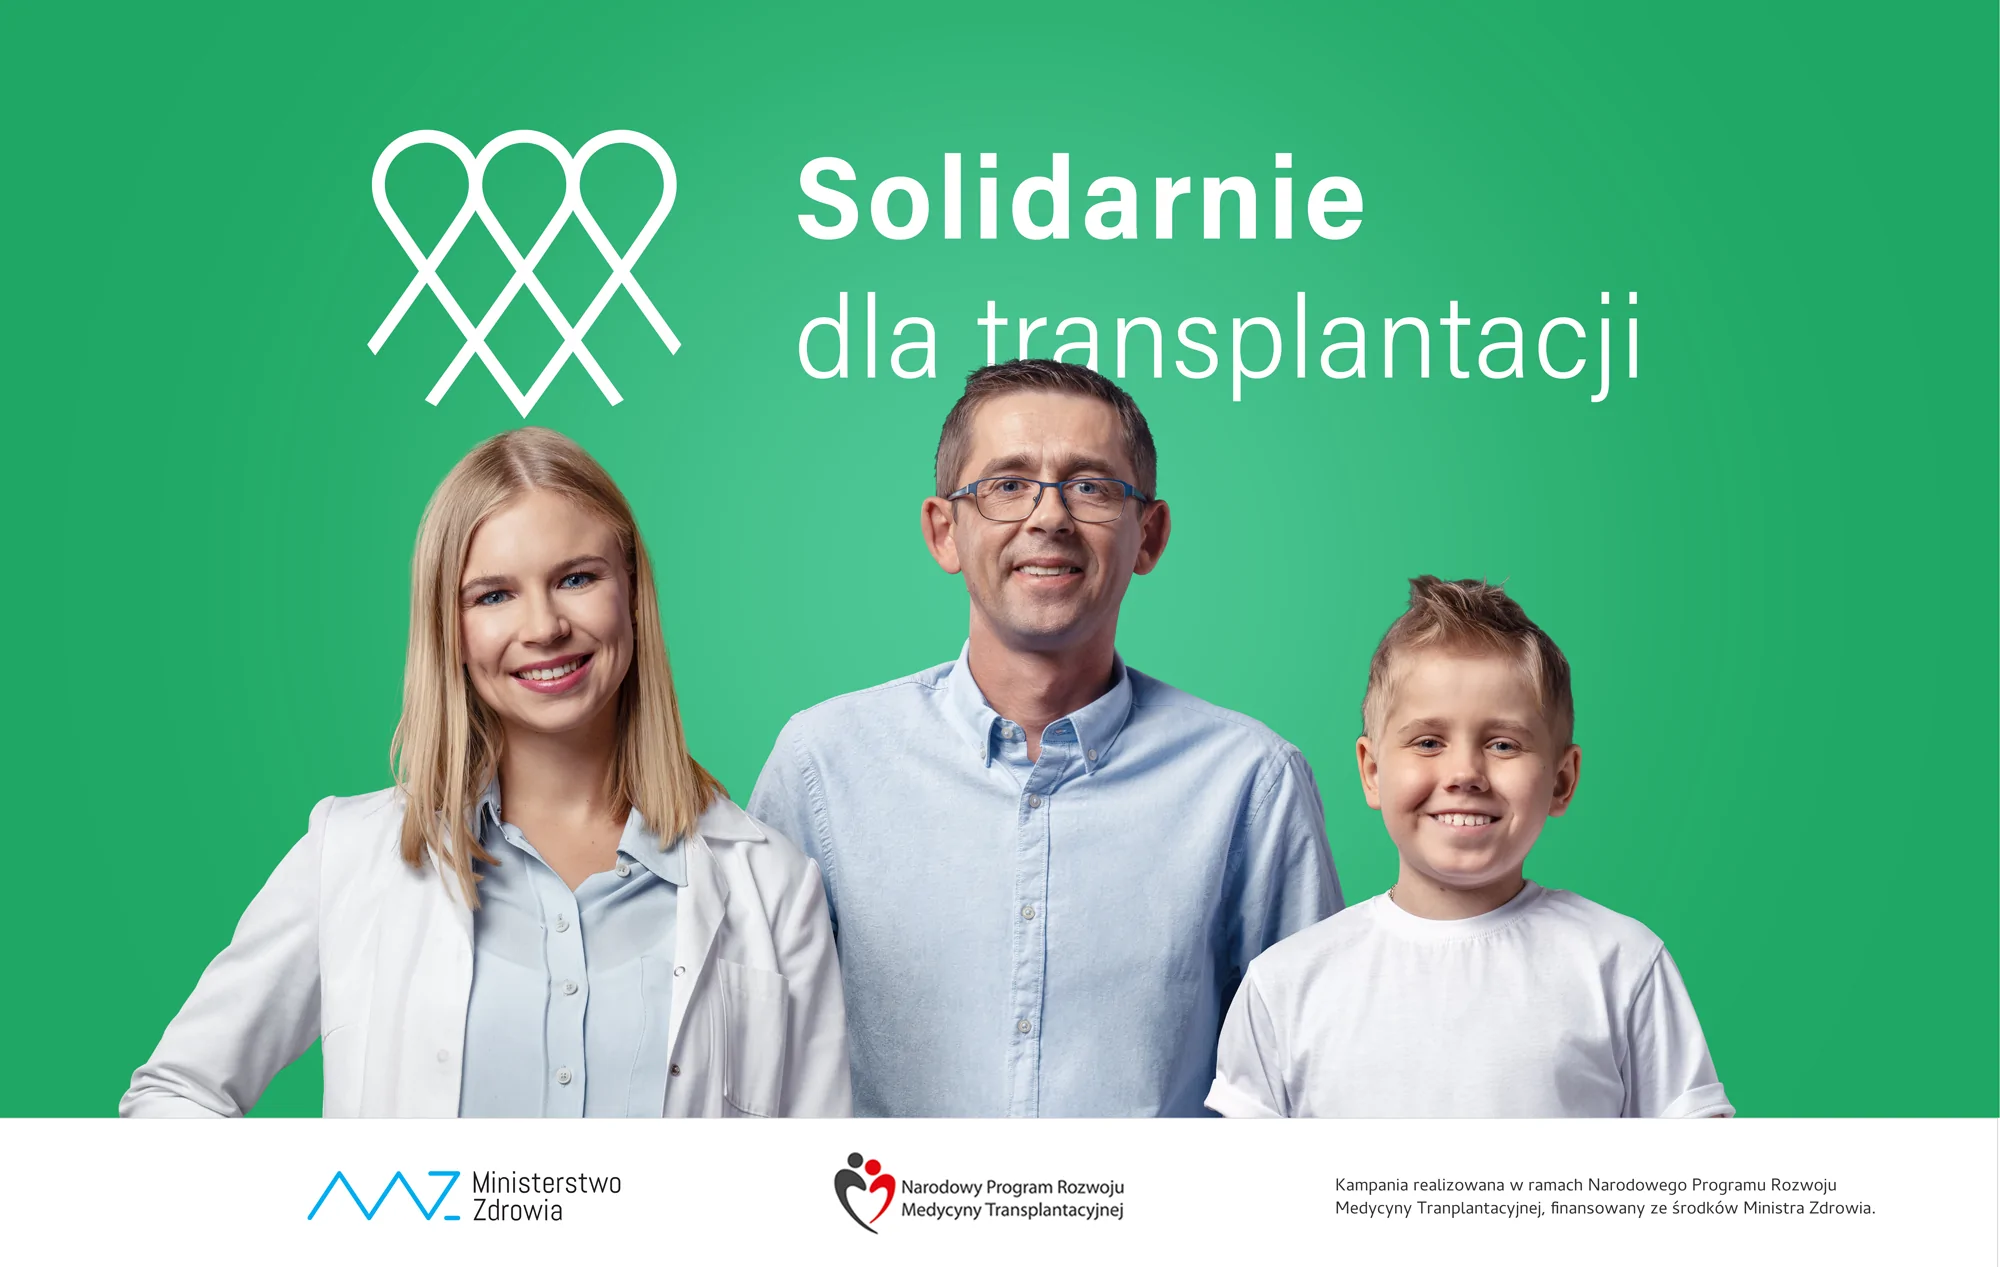 Trzy osoby uśmiechnięte osoby, nad nimi napis Solidarnie dla transplantacji